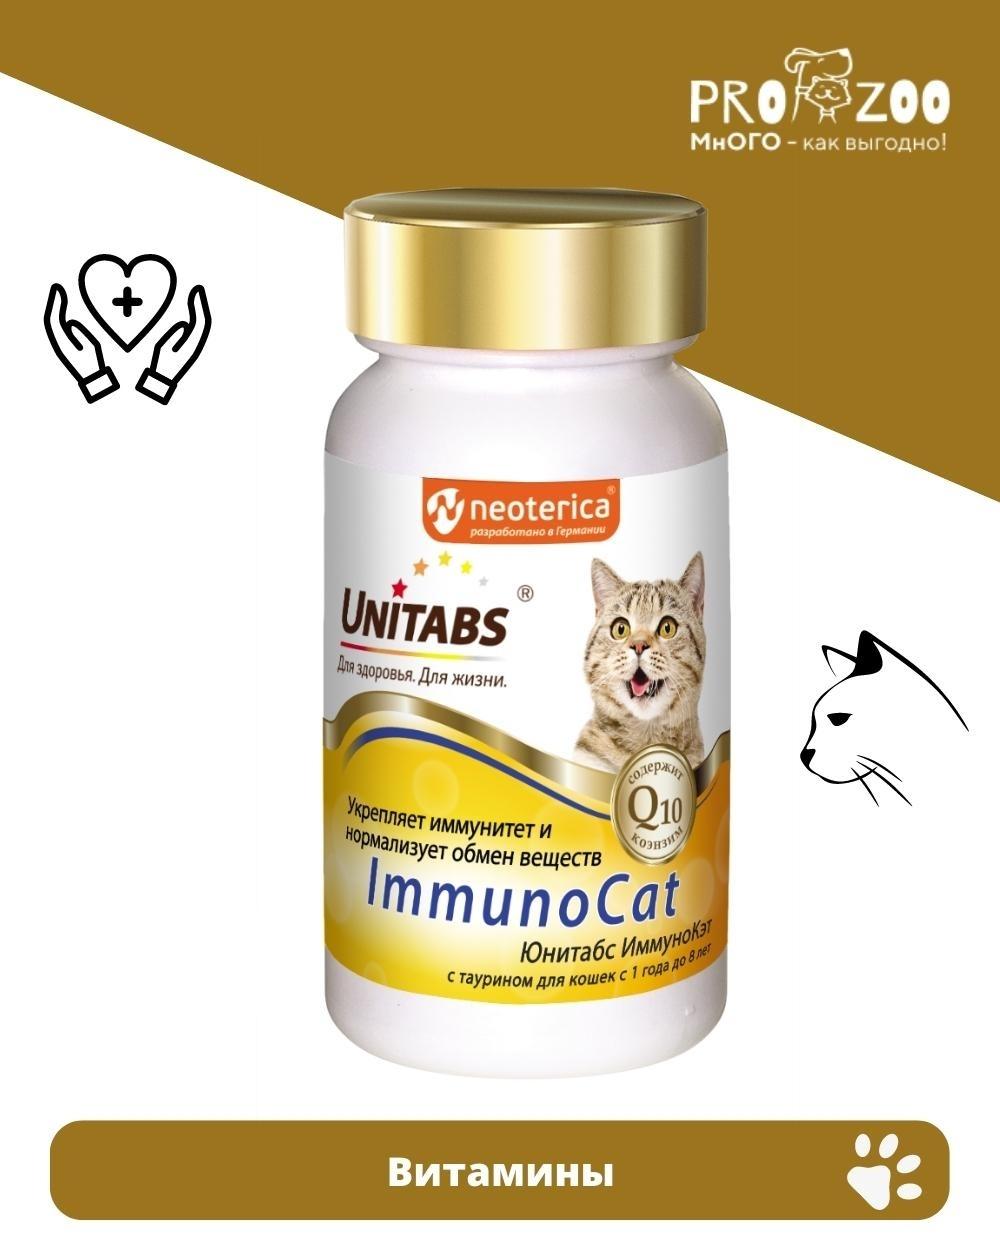 Витамины Unitabs Immuno Cat для иммунитета для кошек, 120 шт 1